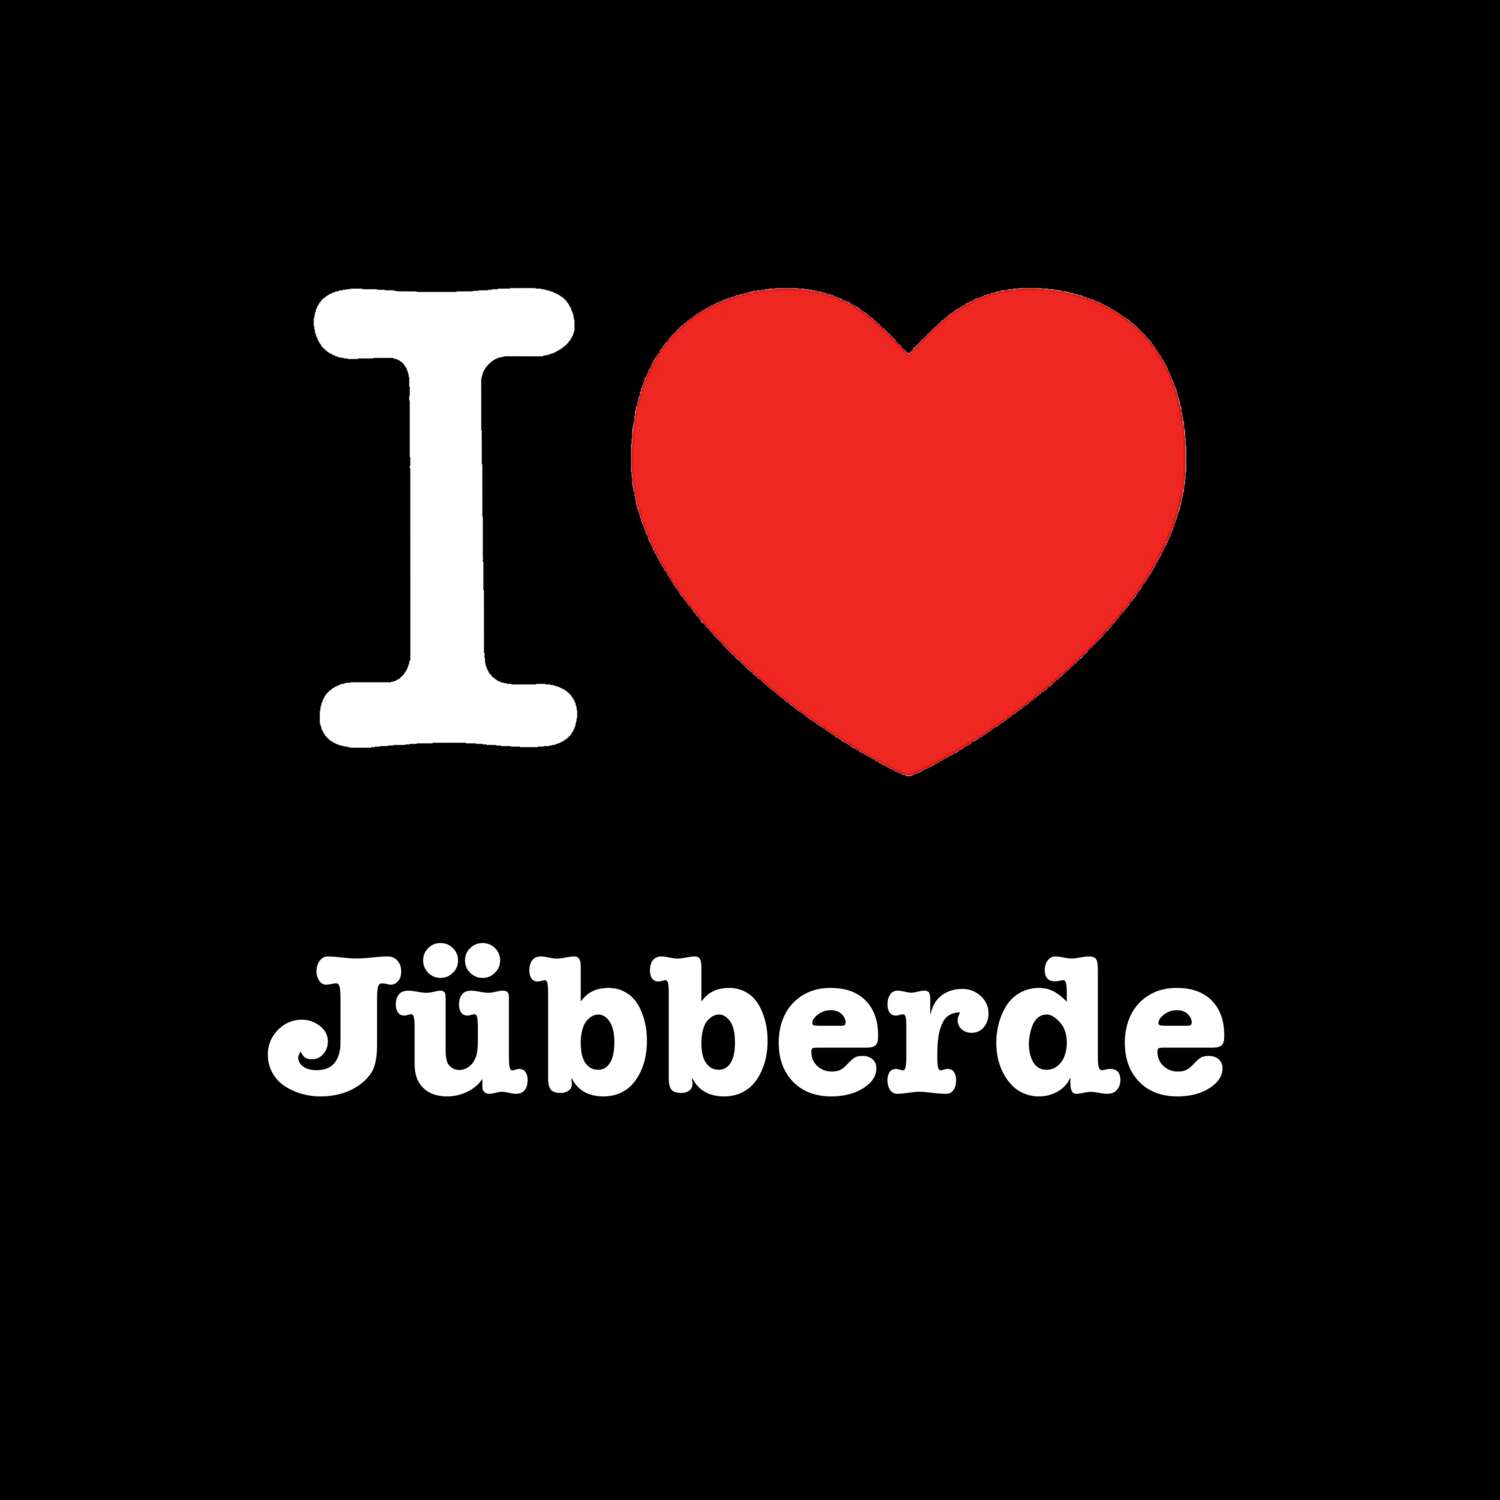 Jübberde T-Shirt »I love«